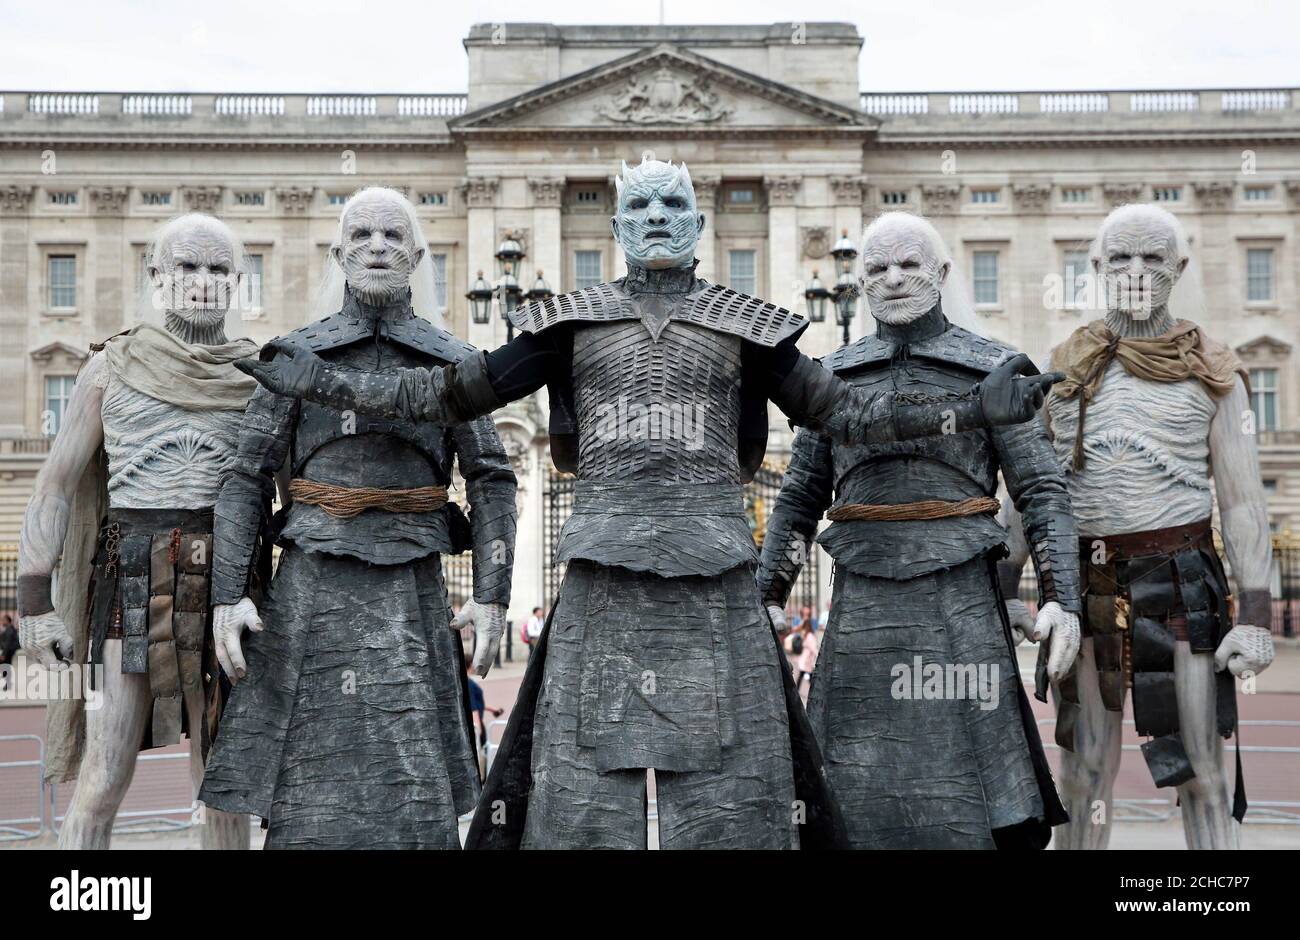 Cinq modèles habillés de White Walkers de Game of Thrones, conduits par le  Night King, passent devant Buckingham Palace à Londres pour célébrer le  début de la saison 7 prochain de l'émission